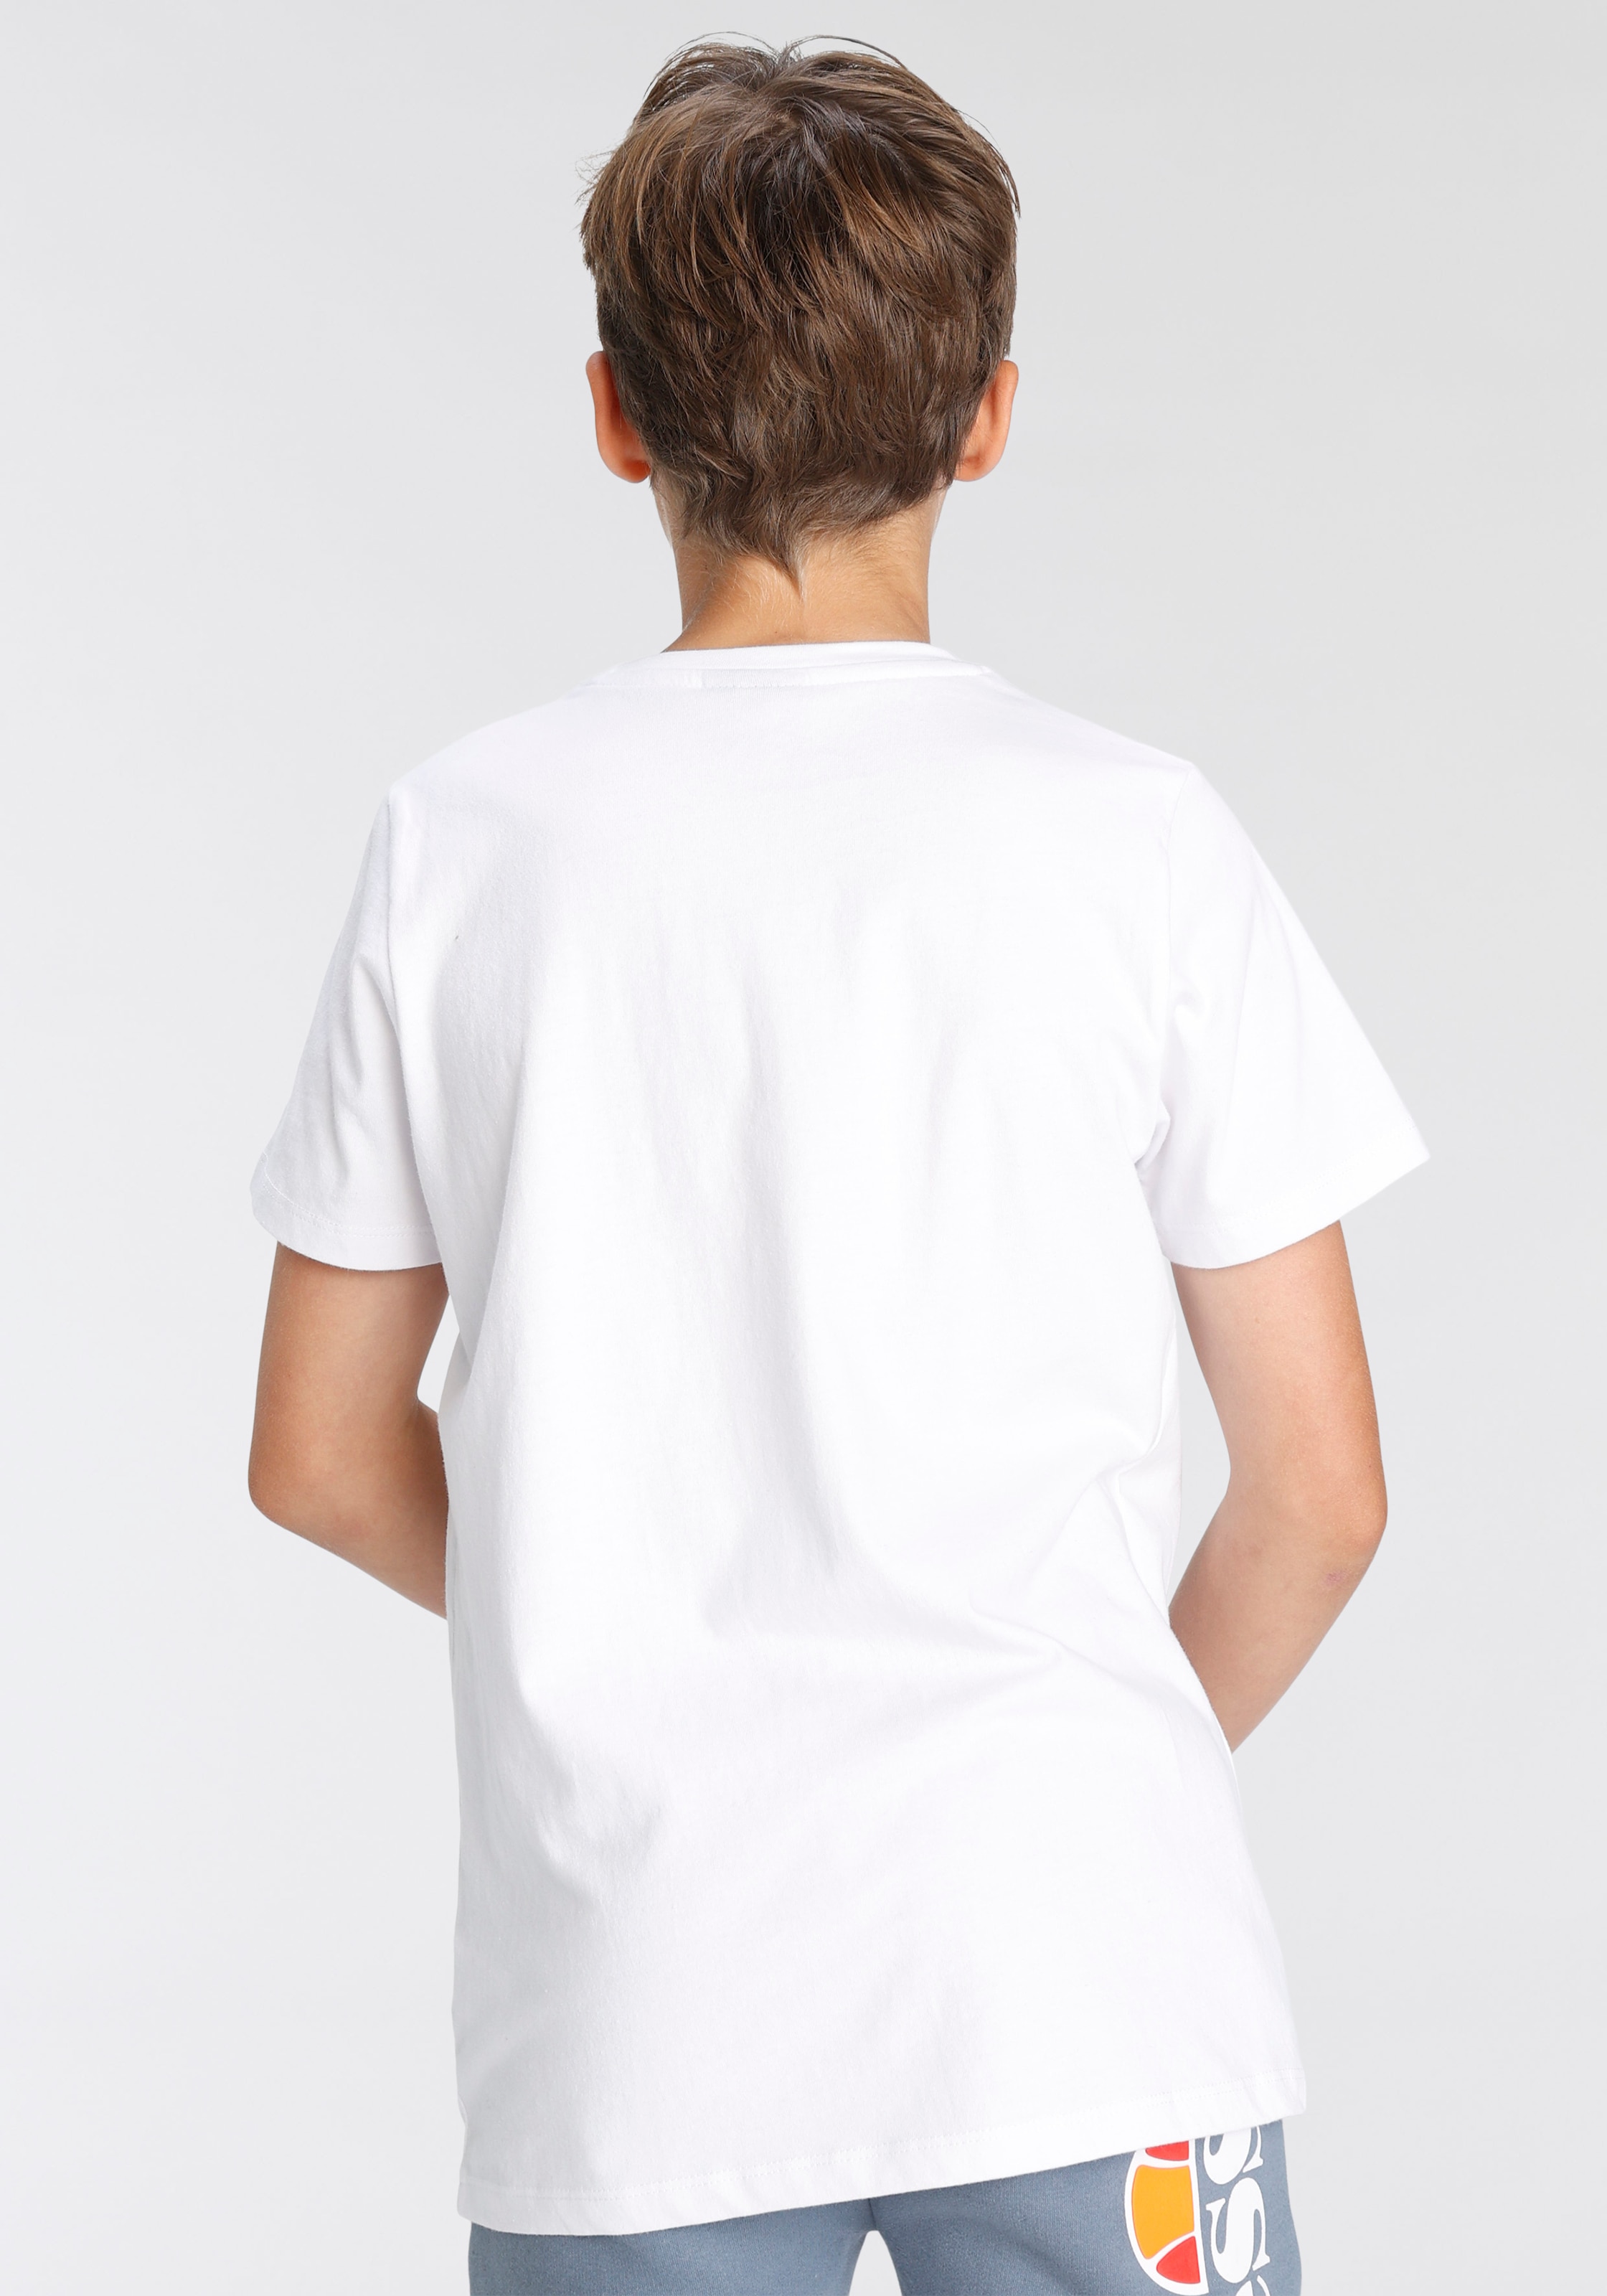 Ellesse T-Shirt »MALIA TEE JNR- für Kinder« kaufen bei OTTO